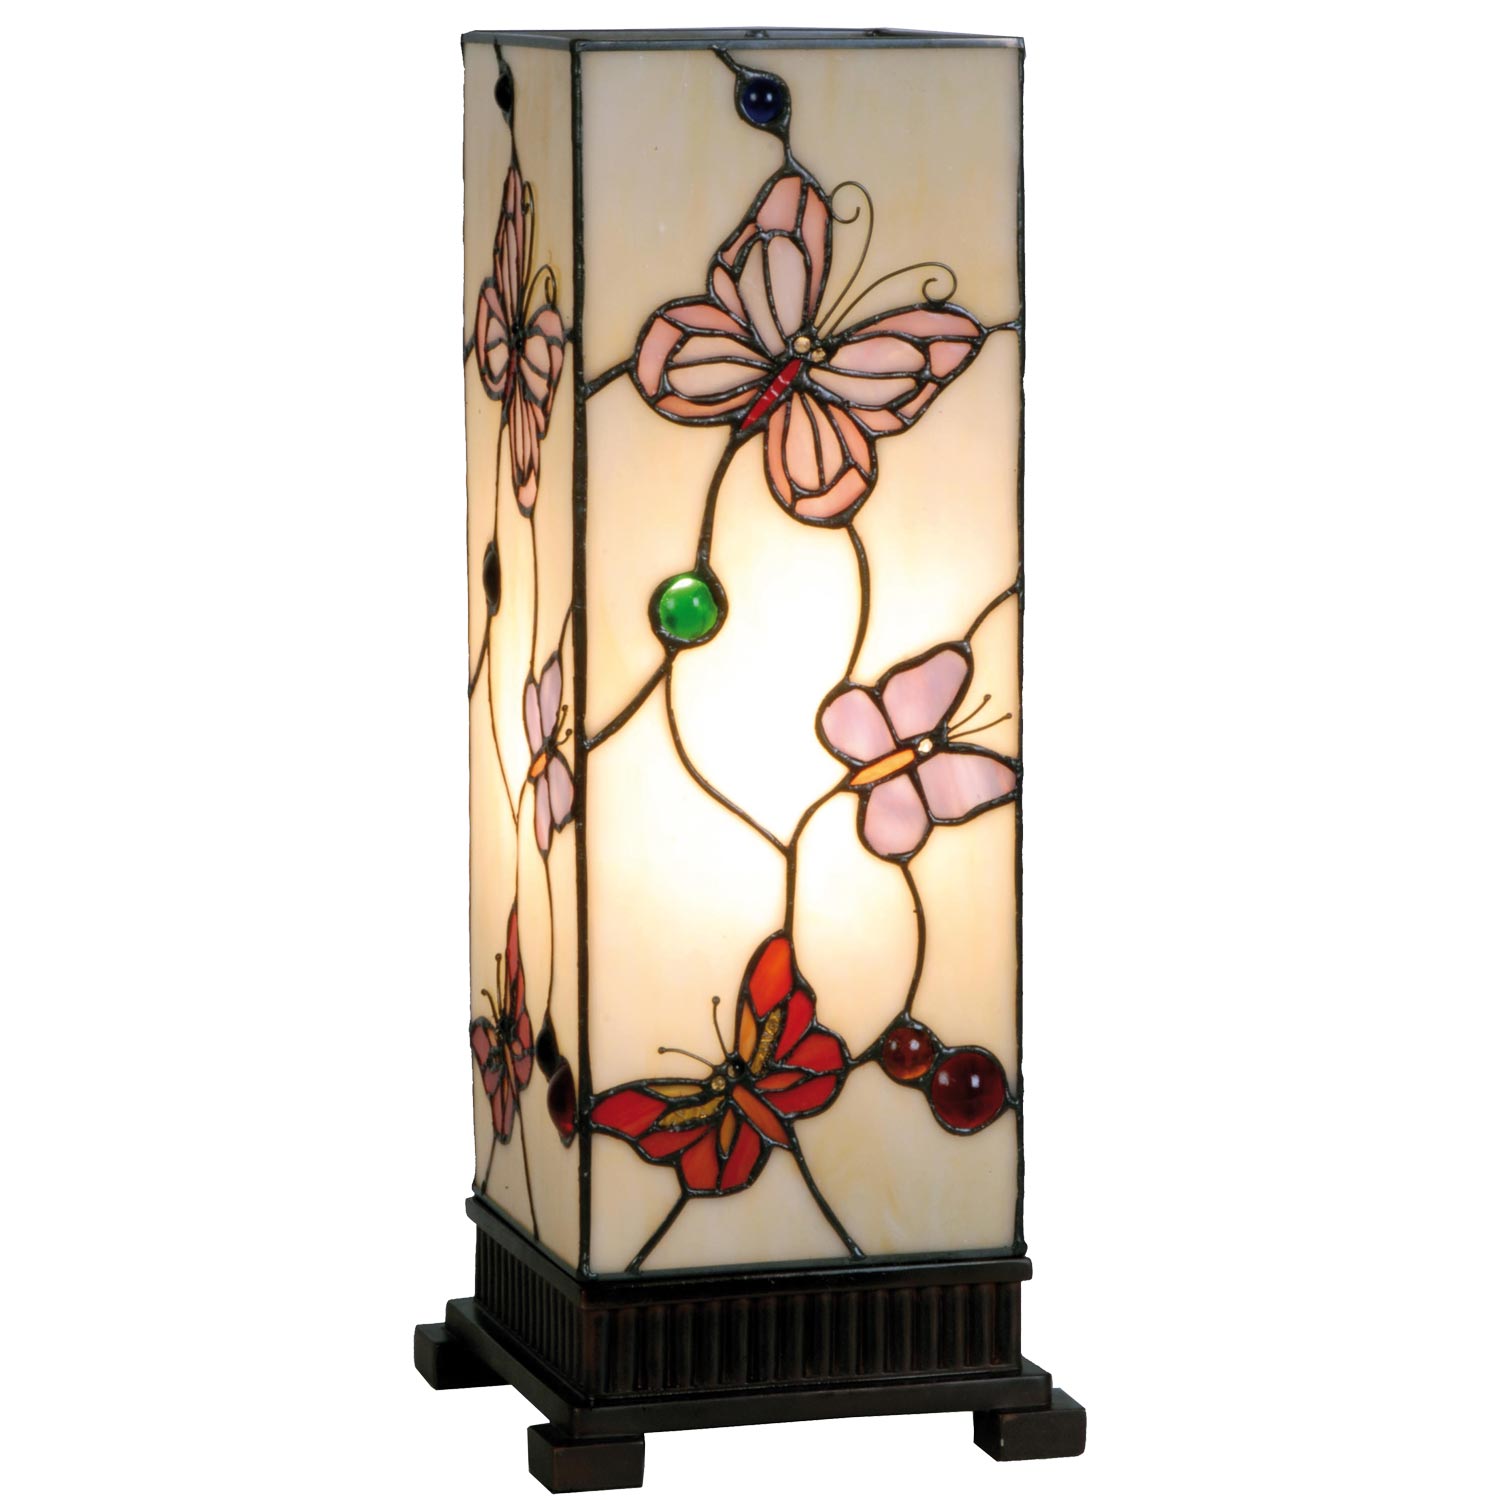 Tiffany Säulenlampe Schmetterlinge hell 45x18cm